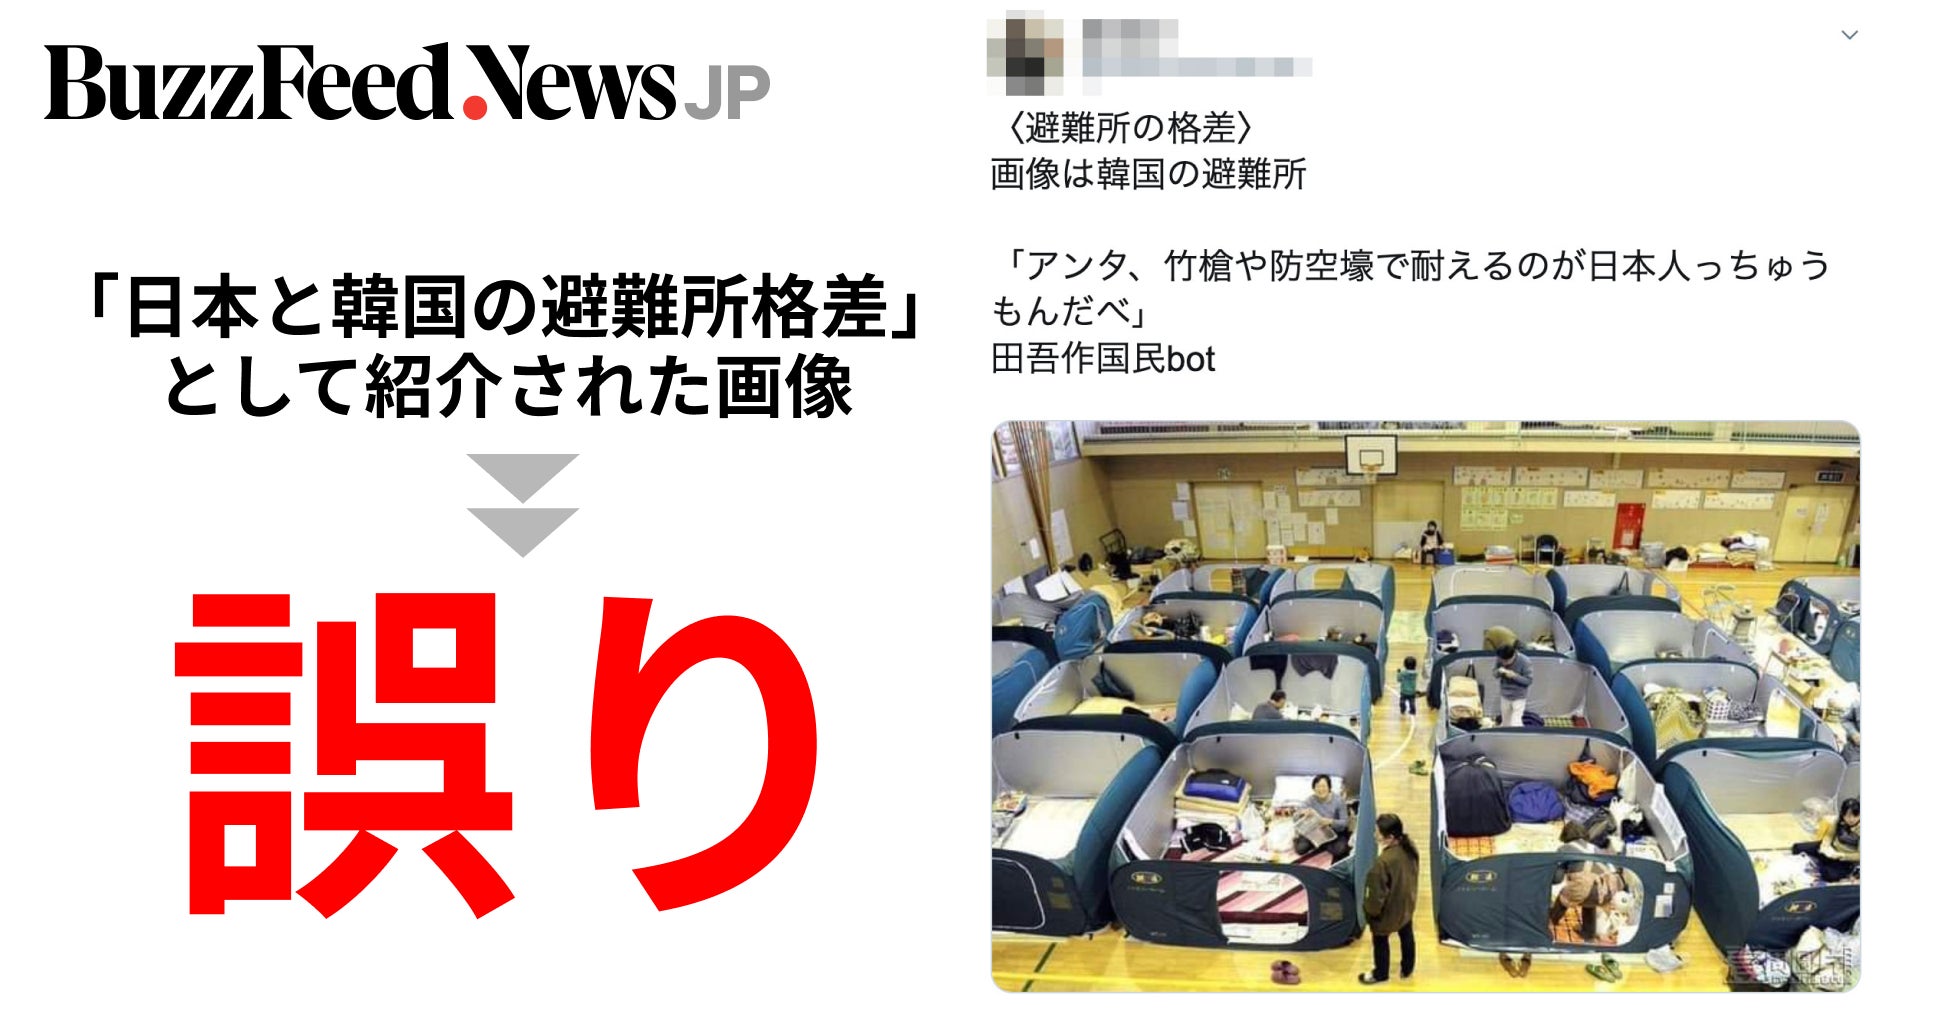 日本と韓国の避難所格差 として紹介された画像は誤り 台風19号で拡散